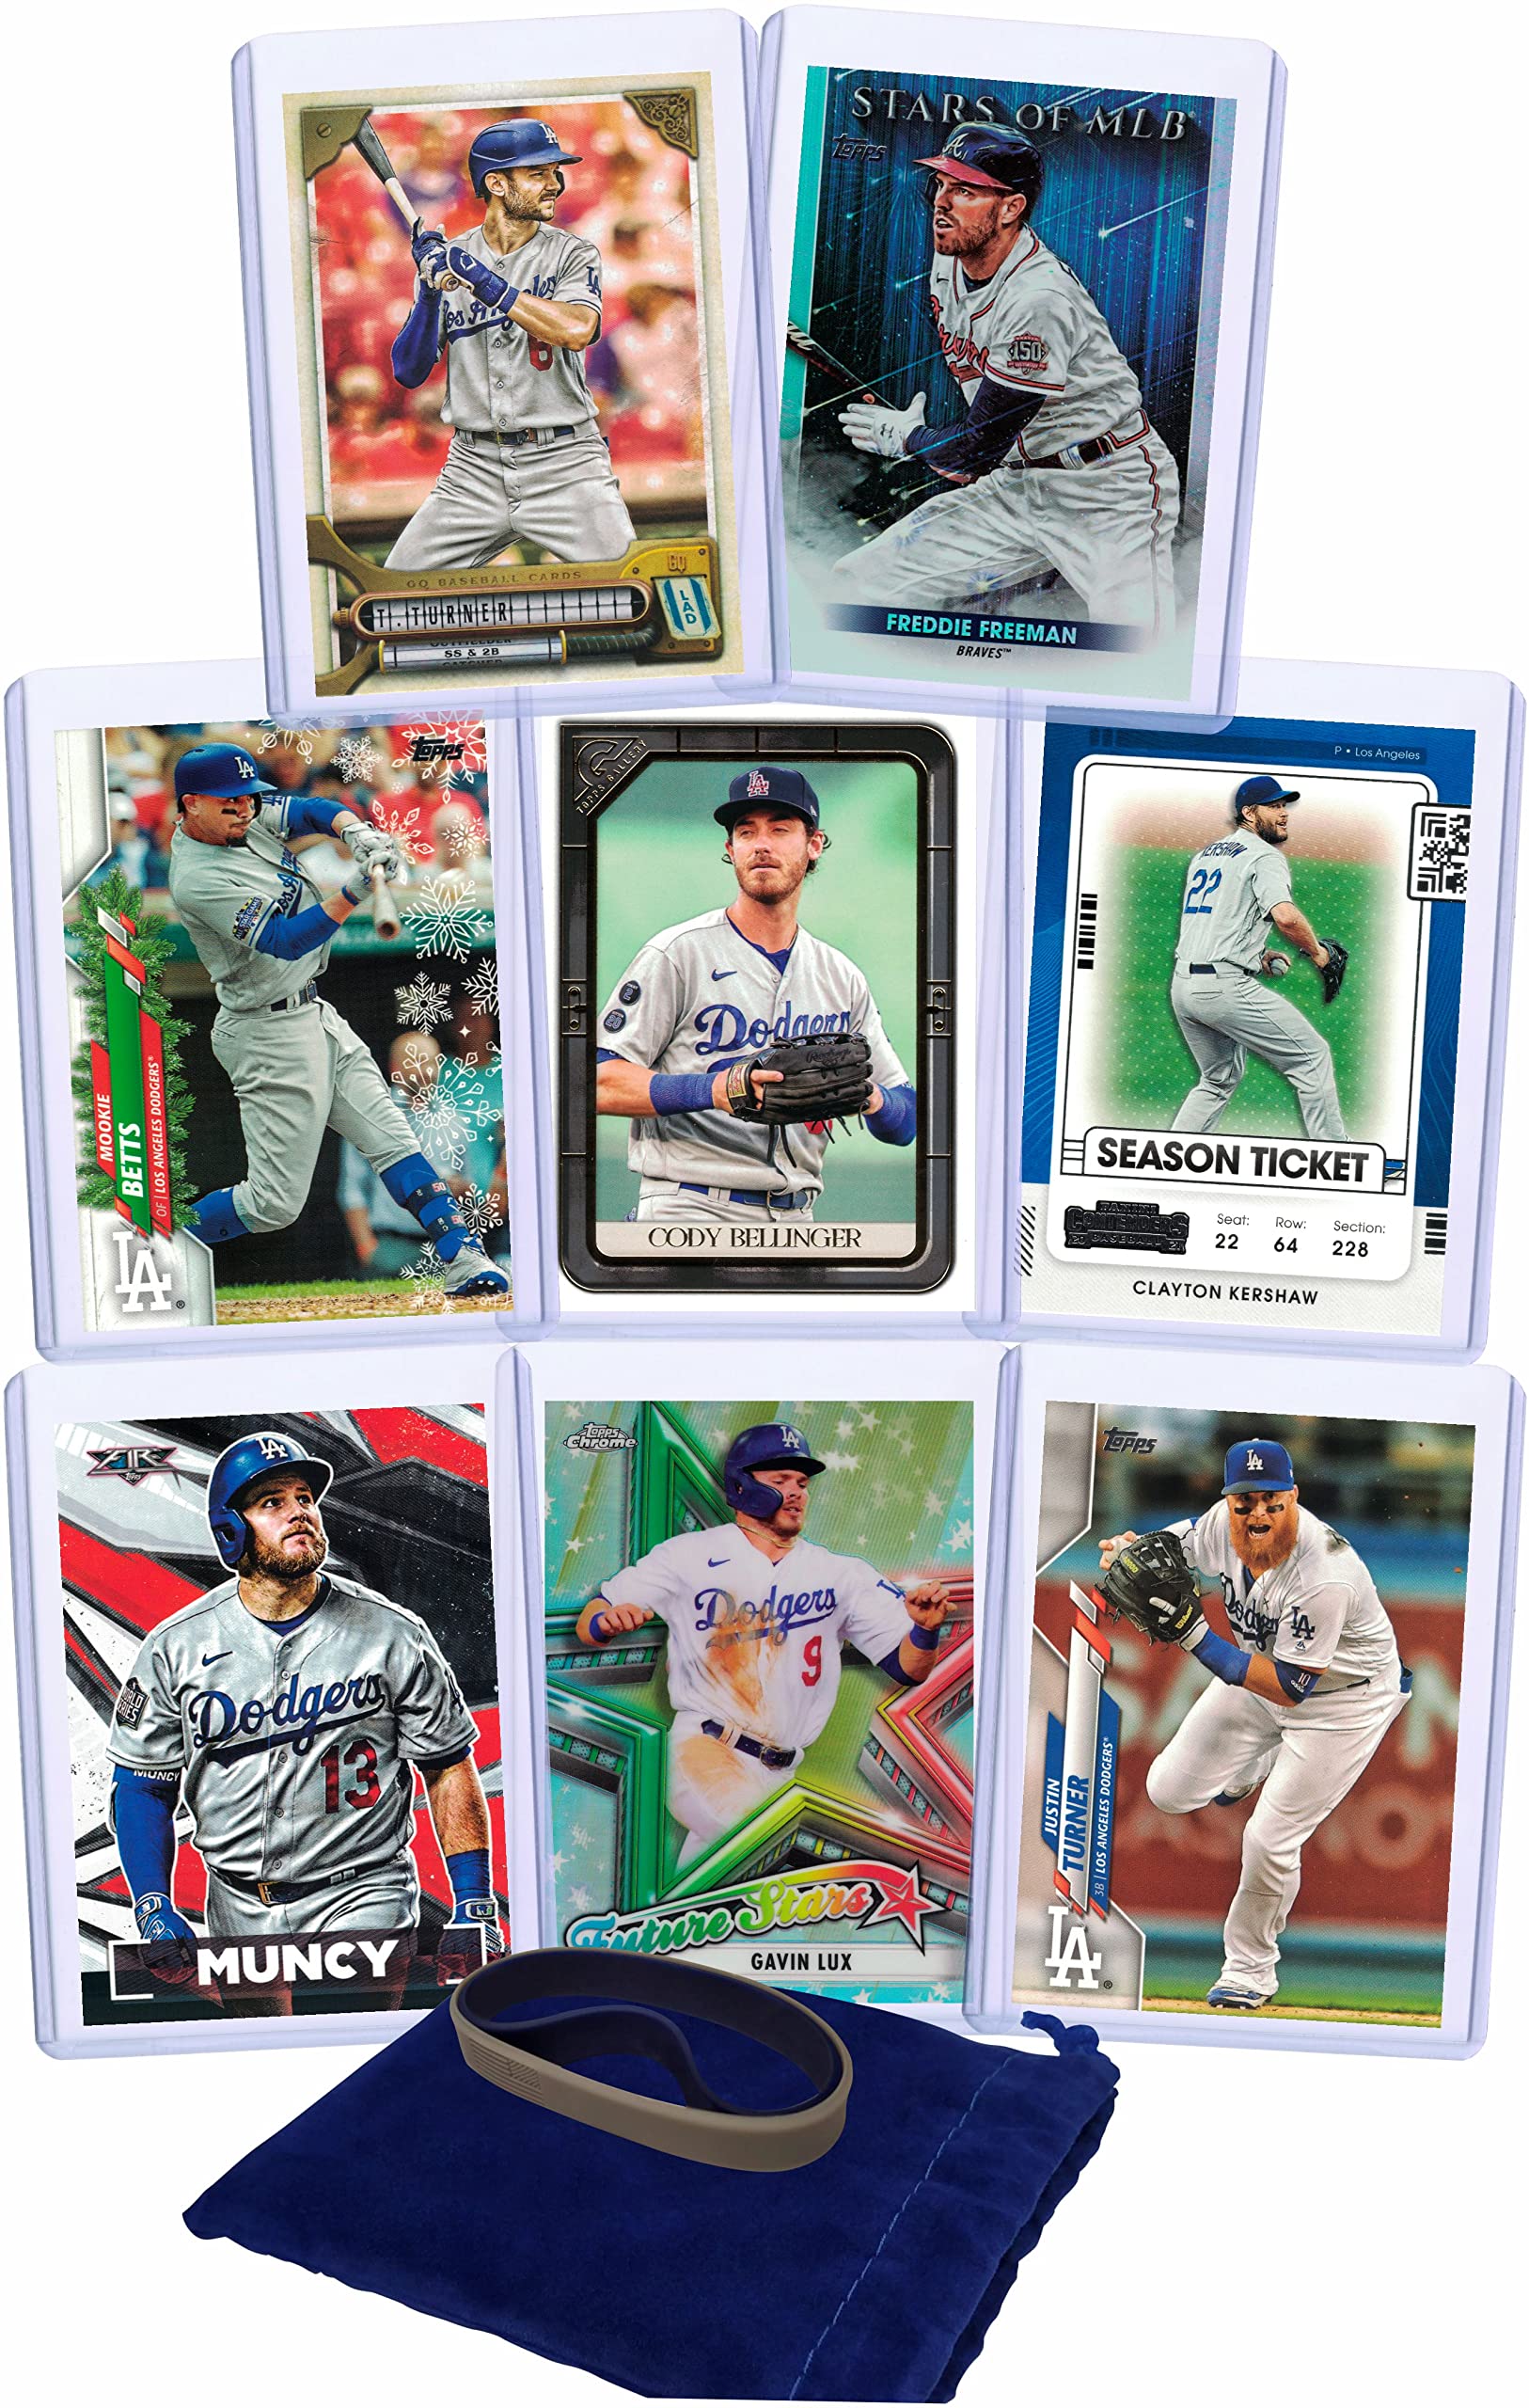 Los Angeles Dodgers Baseball Cards: Trea Turner, Freddie Freeman, Mookie  Betts, Cody Bellinger, Clayton Kershaw, Max